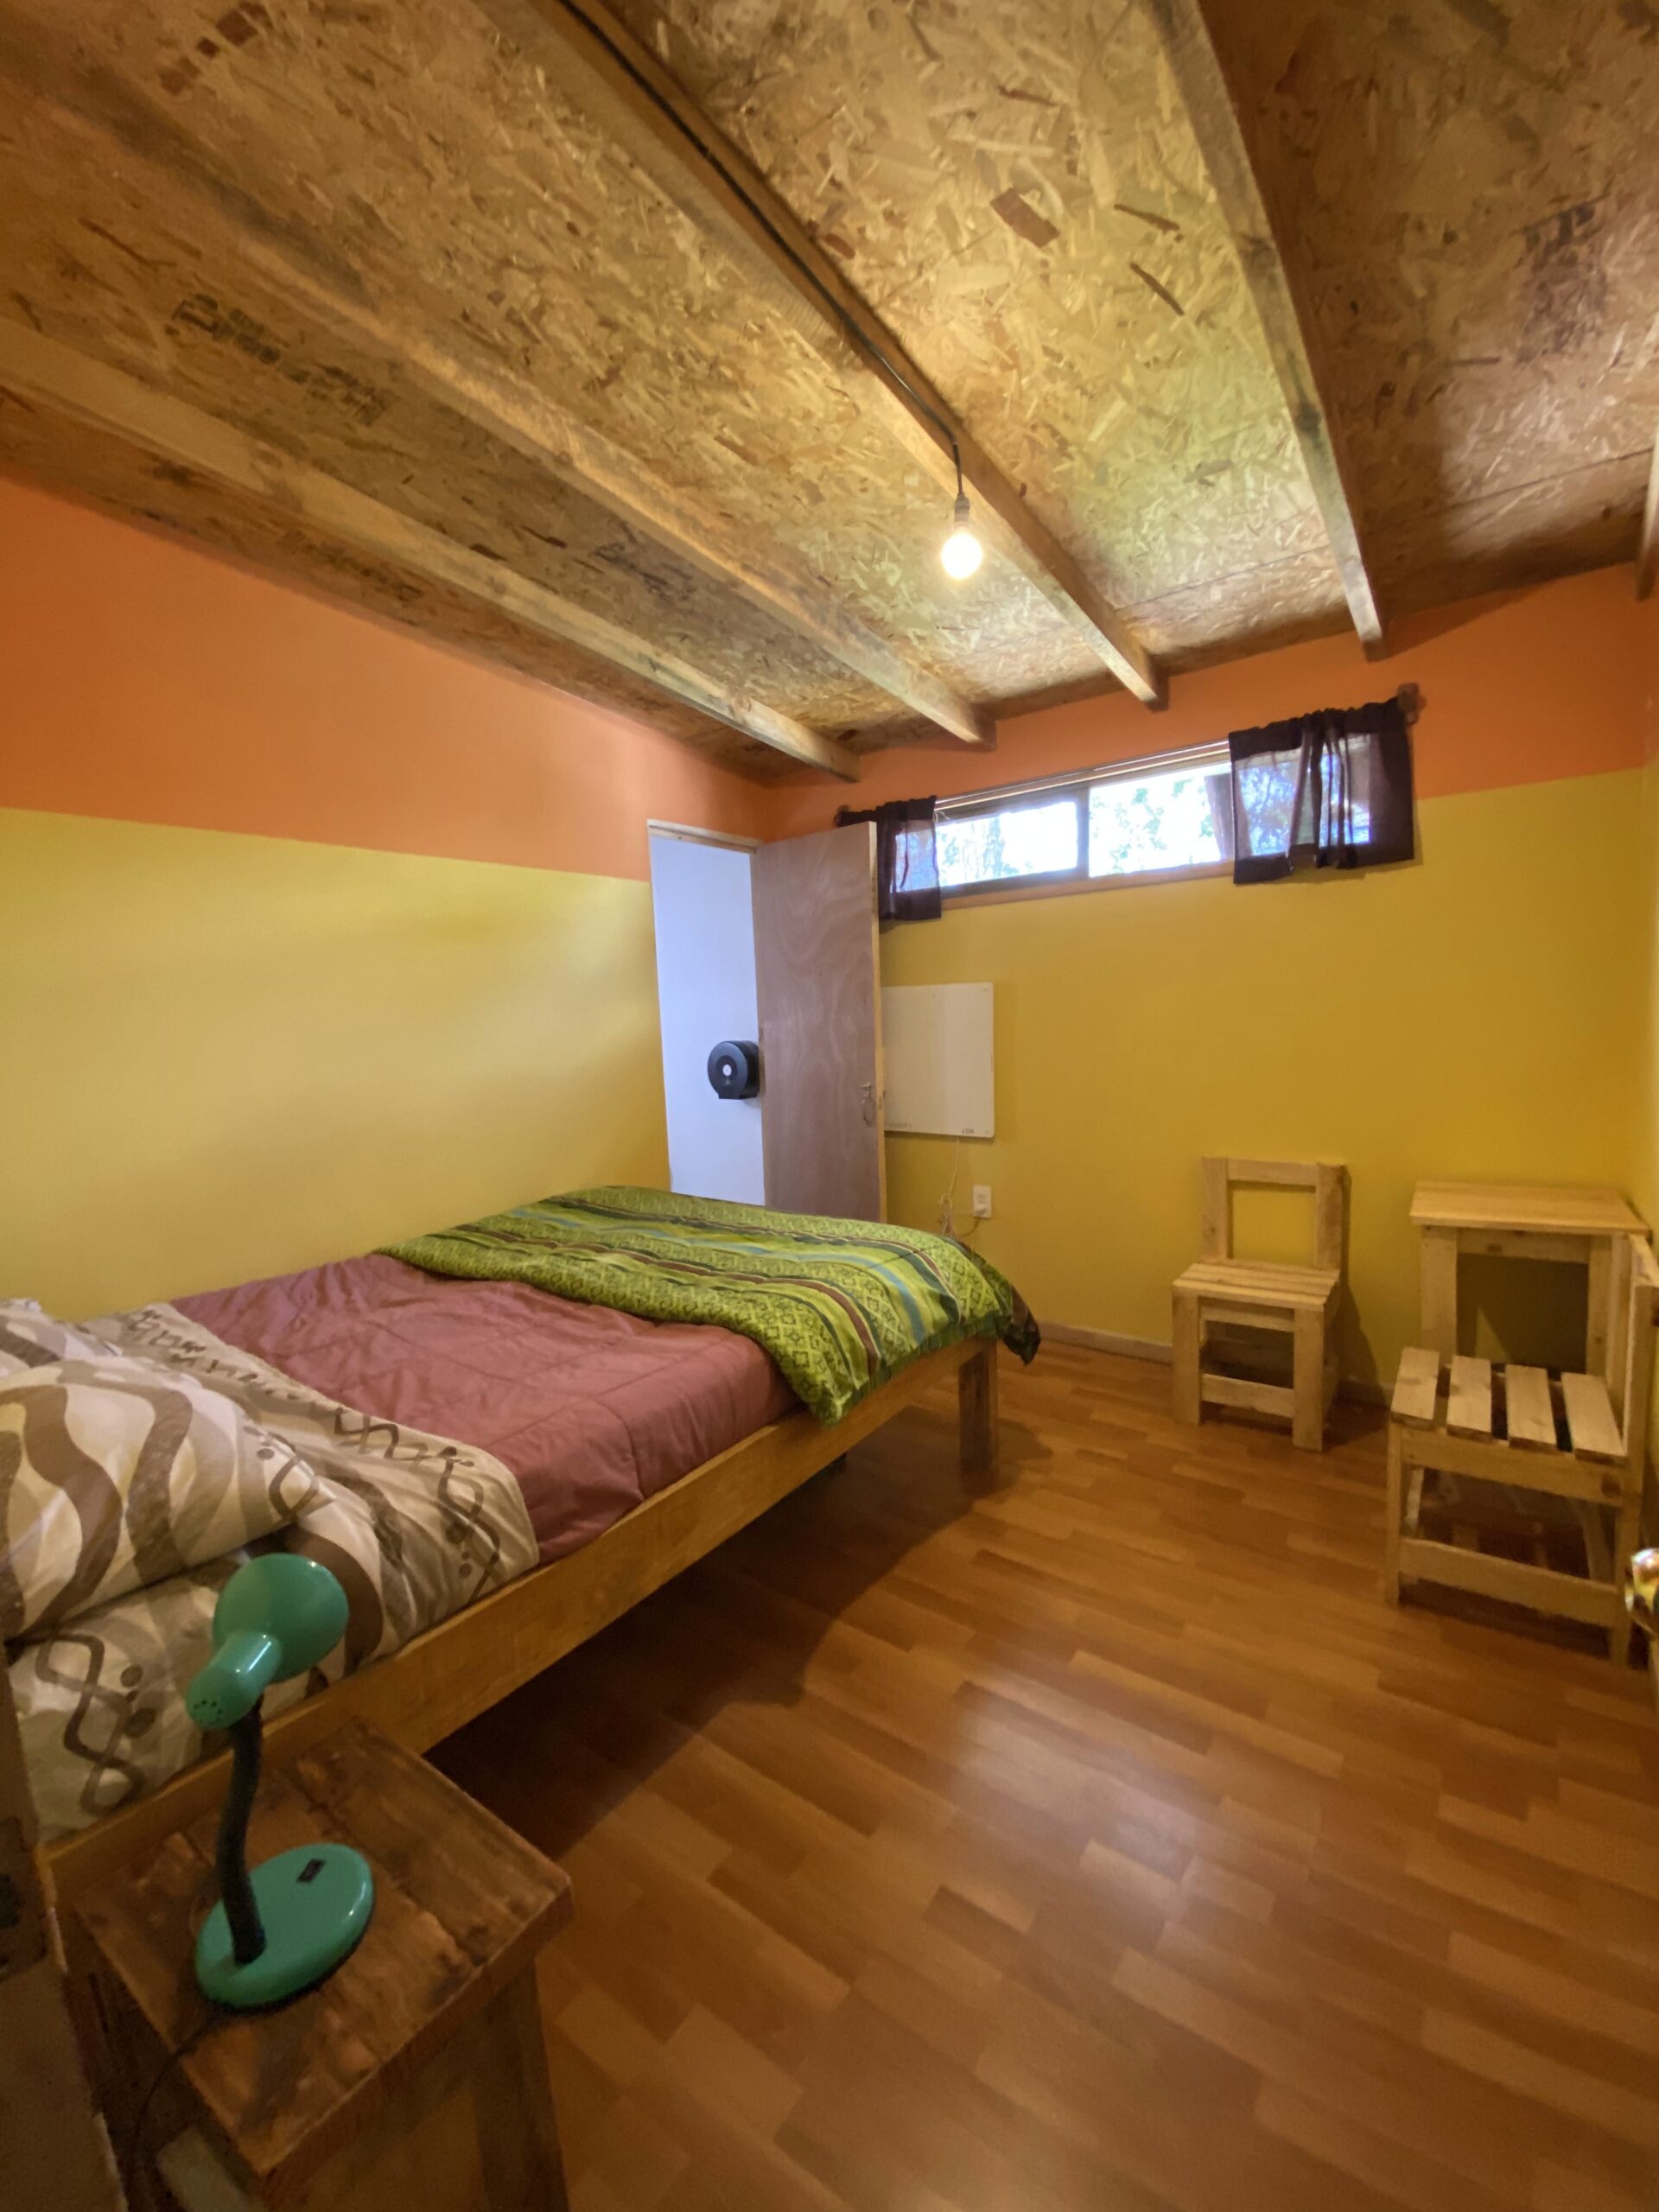 Habitación piso de madera, cama matrimonial con baño privado, mesa, sillas y calefacción